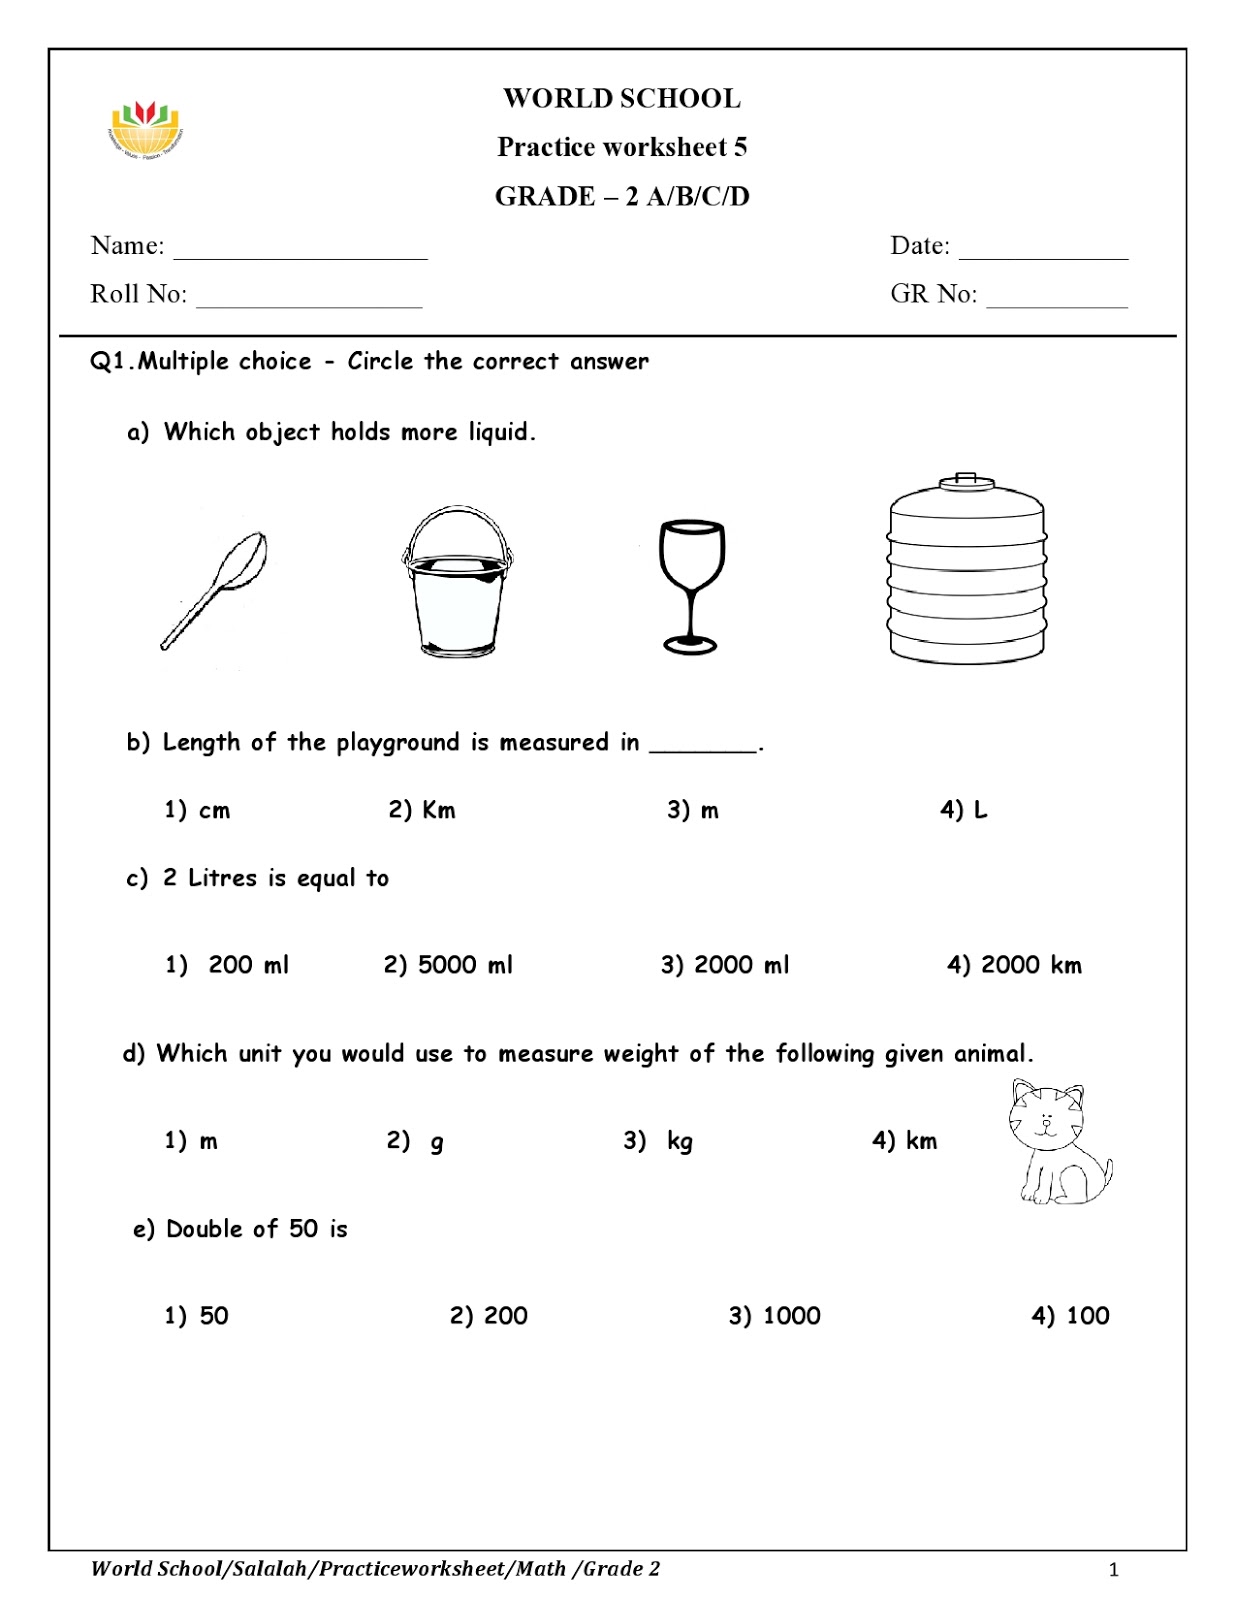 homework worksheet for grade 2